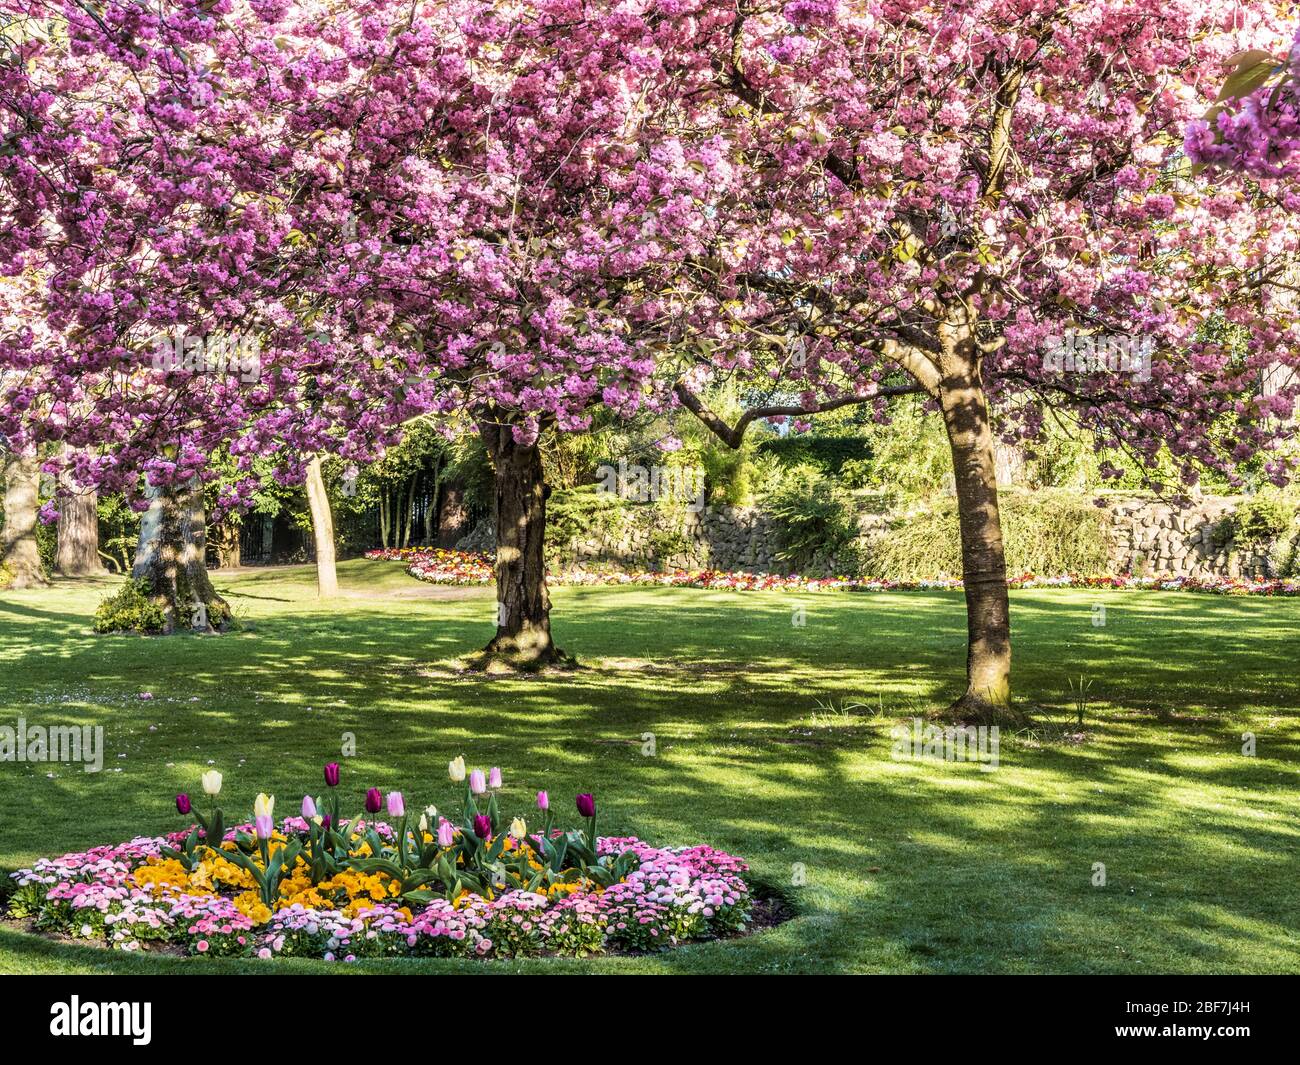 Un lit de tulipes, de primulas jaunes et de marguerites roses Bellis avec des cerisiers roses fleuris en arrière-plan dans un parc public urbain en Angleterre. Banque D'Images